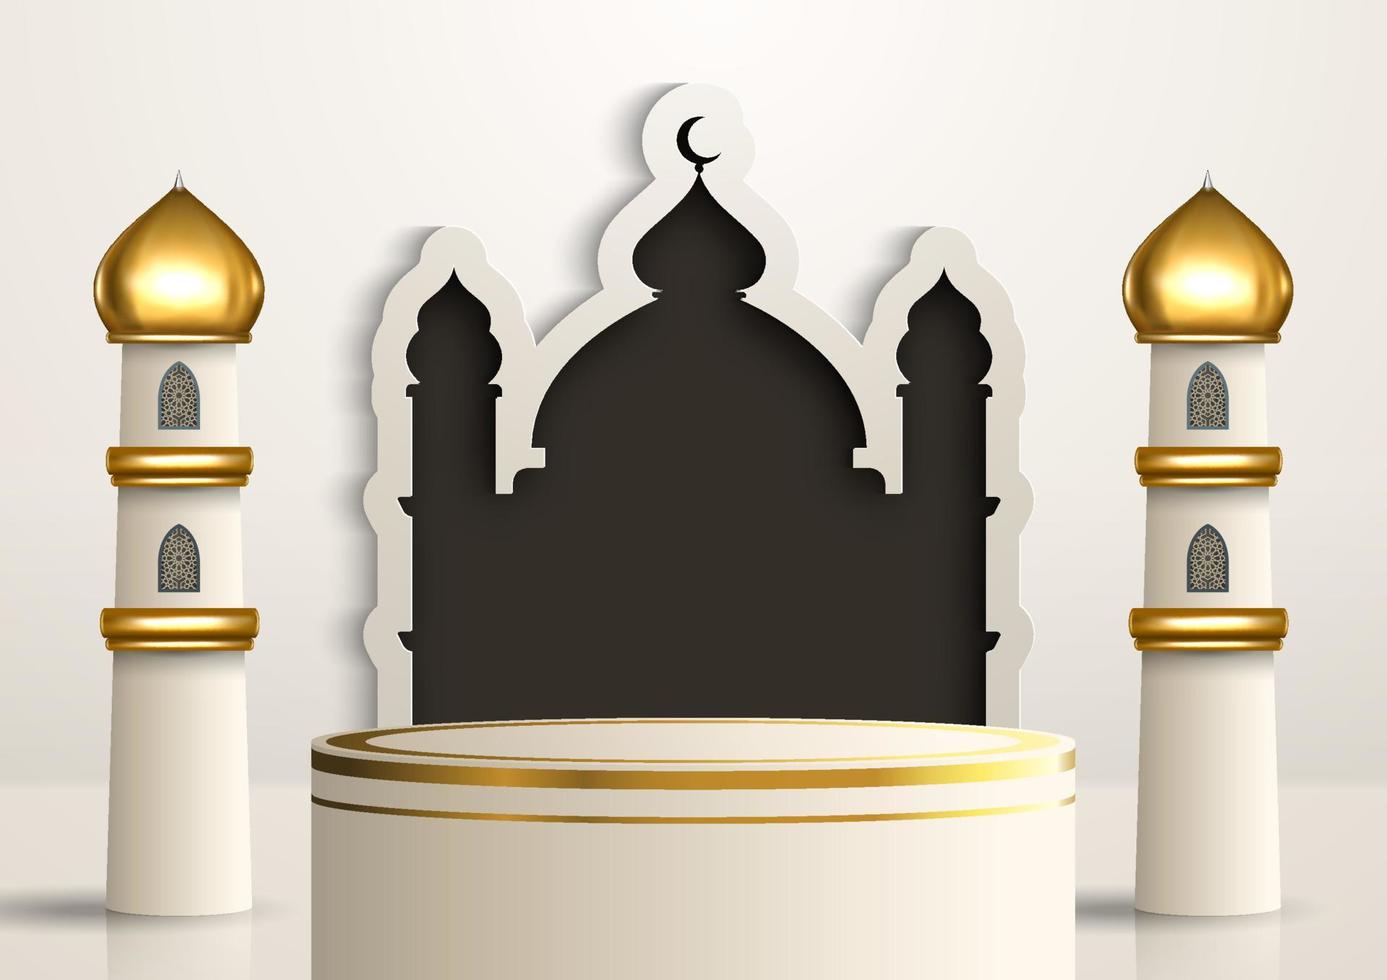 realistisches islamisches produktanzeigepodium mit moscheerahmen und goldenen minaretten im weißen hintergrund. 3D-Islamische Illustration für Werbung, Verkauf und Online-Shopping. helles Sockeldesign vektor